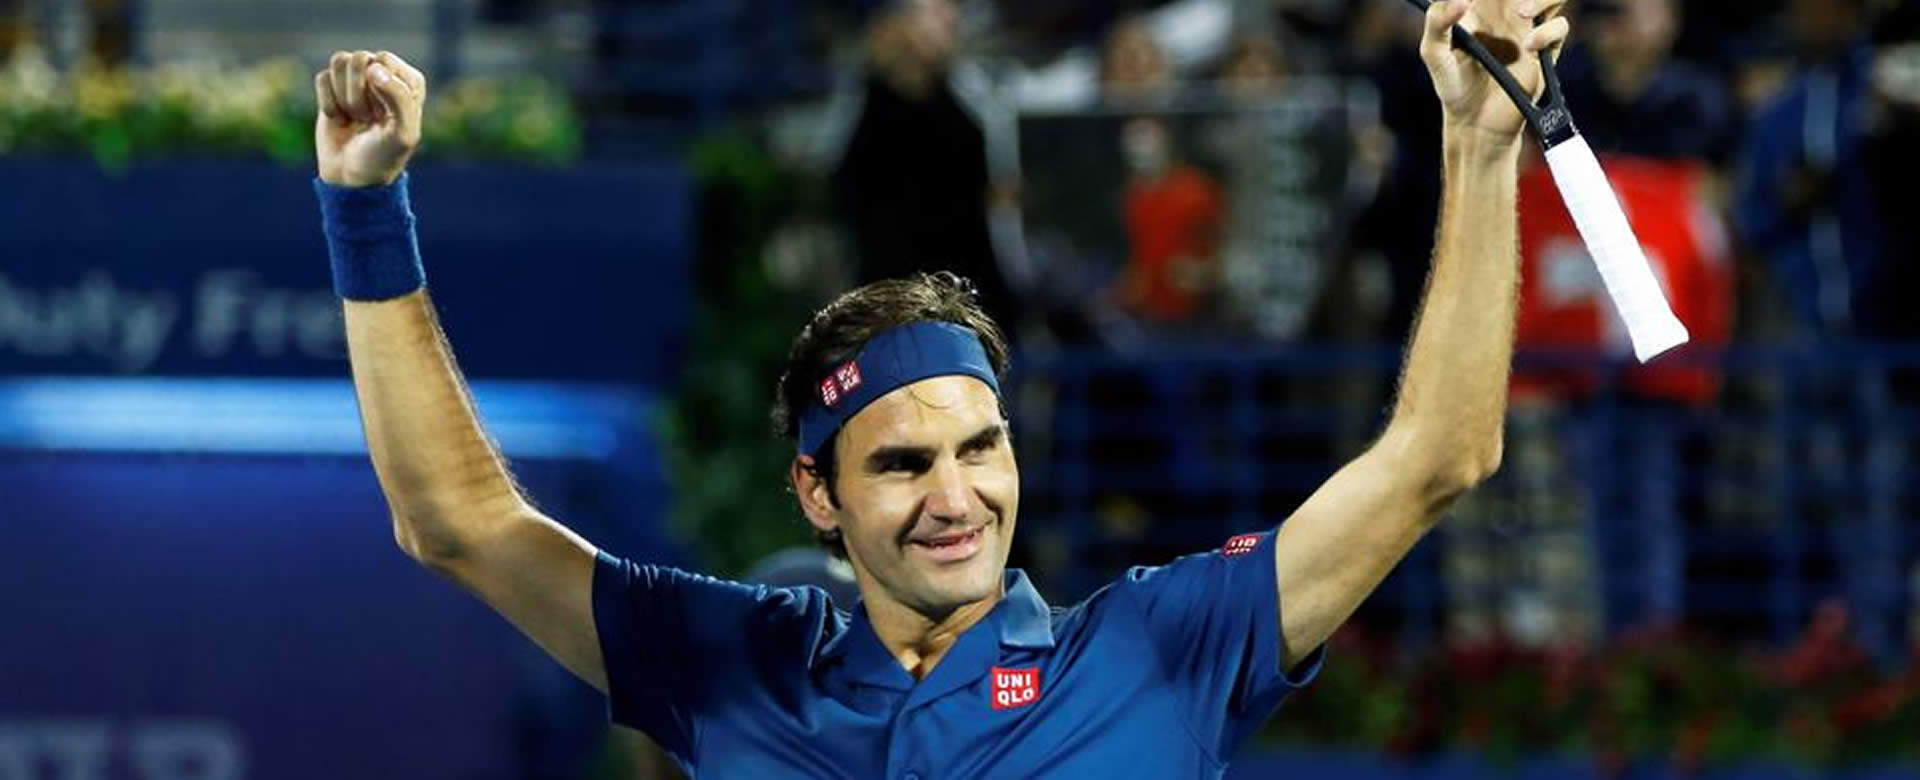 Roger Federer hace historia en el tenis mundial y alcanza su título 100 en Dubai